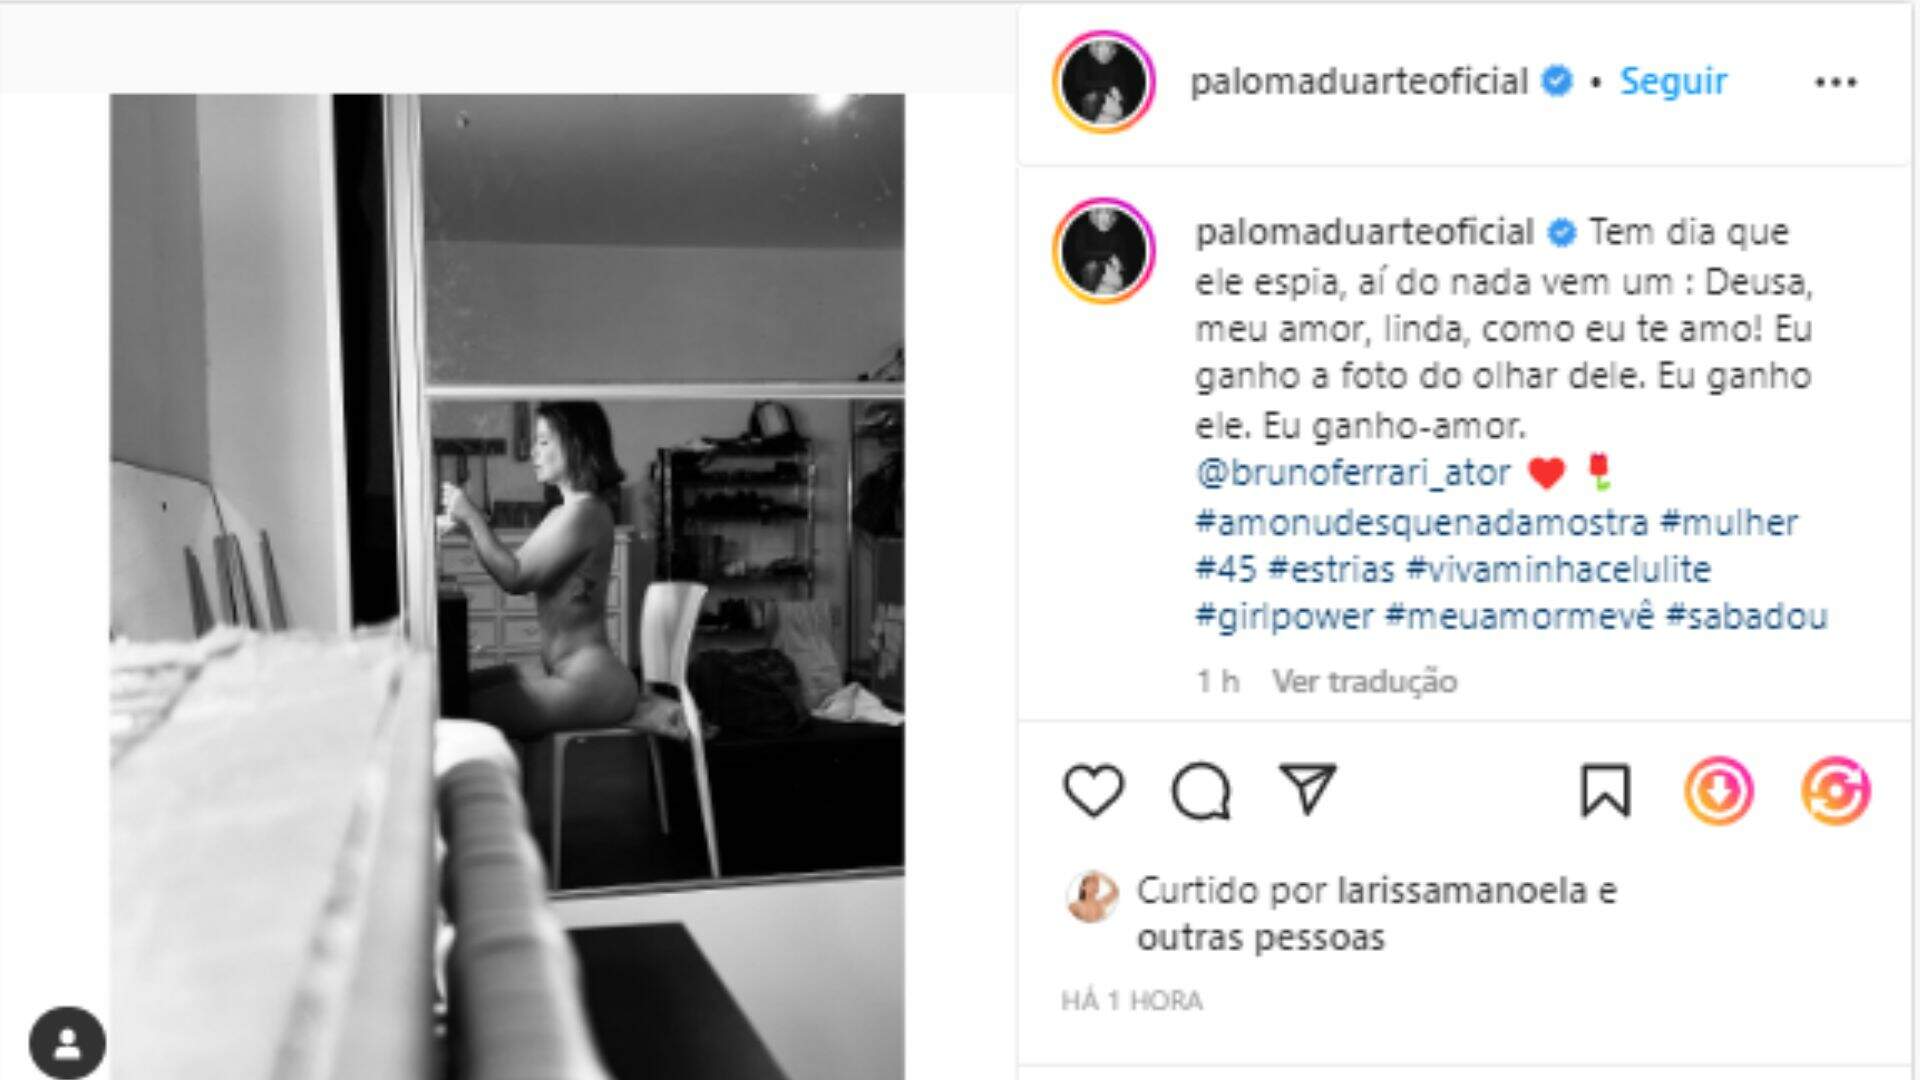 Paloma Duarte impressiona com foto nua feita por Bruno Duarte: “Olhar dele”  - Metropolitana FM